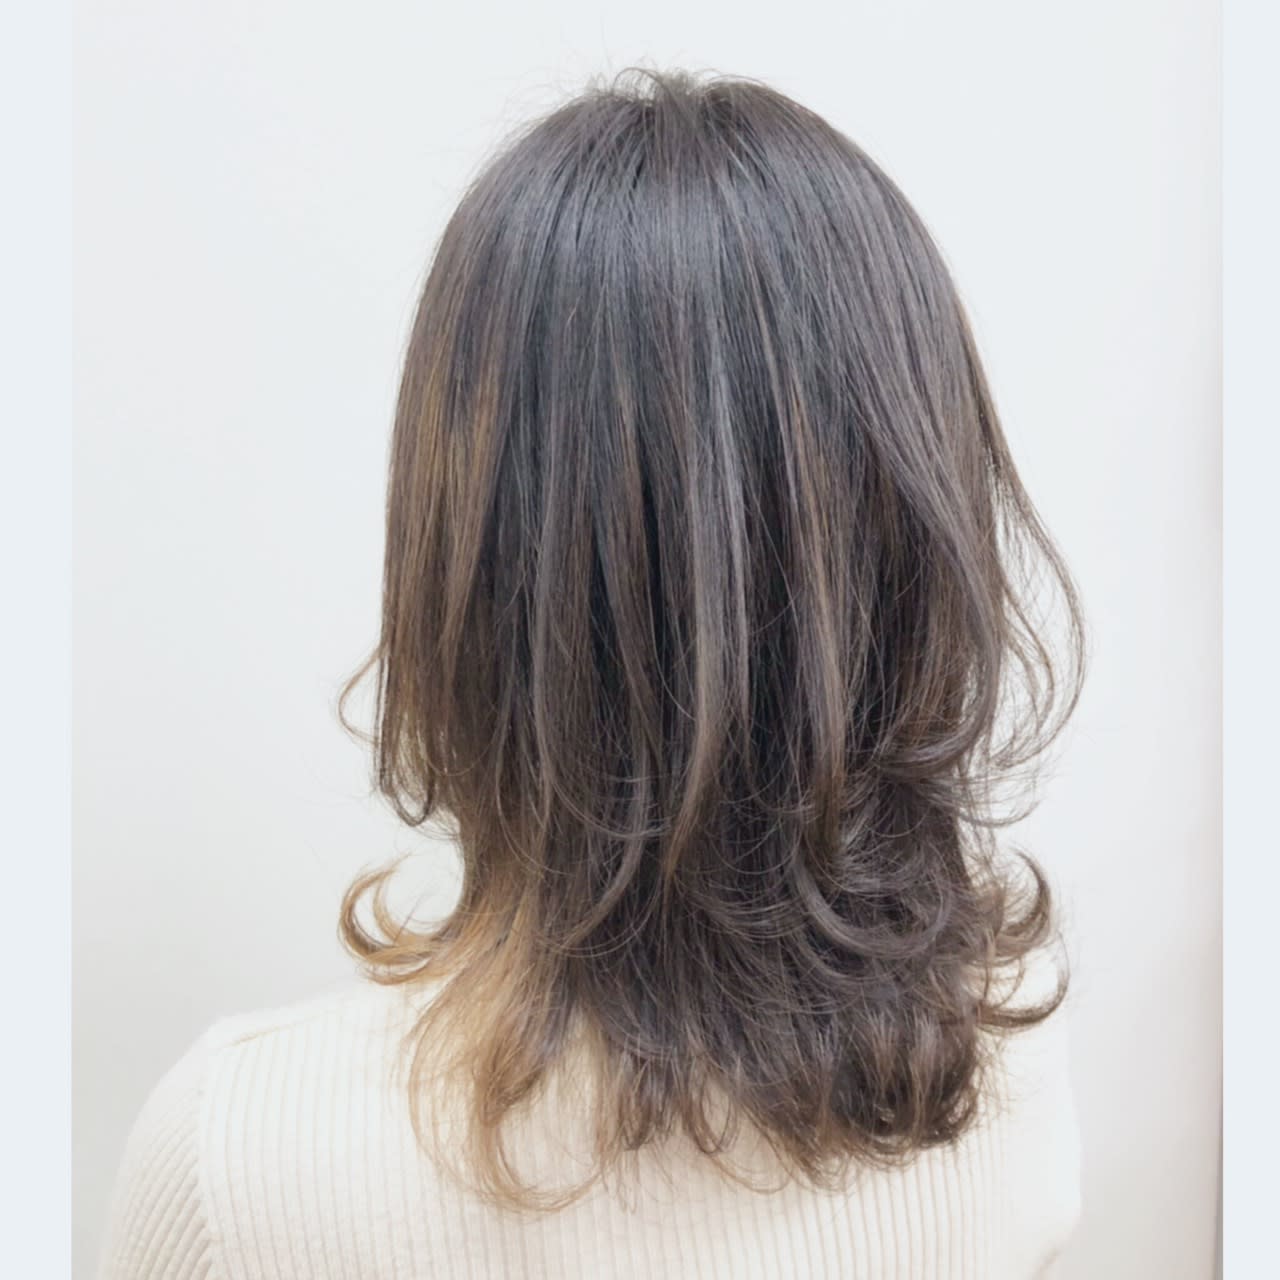 TOKI hair salon【トキヘアサロン】のスタイル紹介。ゆるふわレイヤースタイル